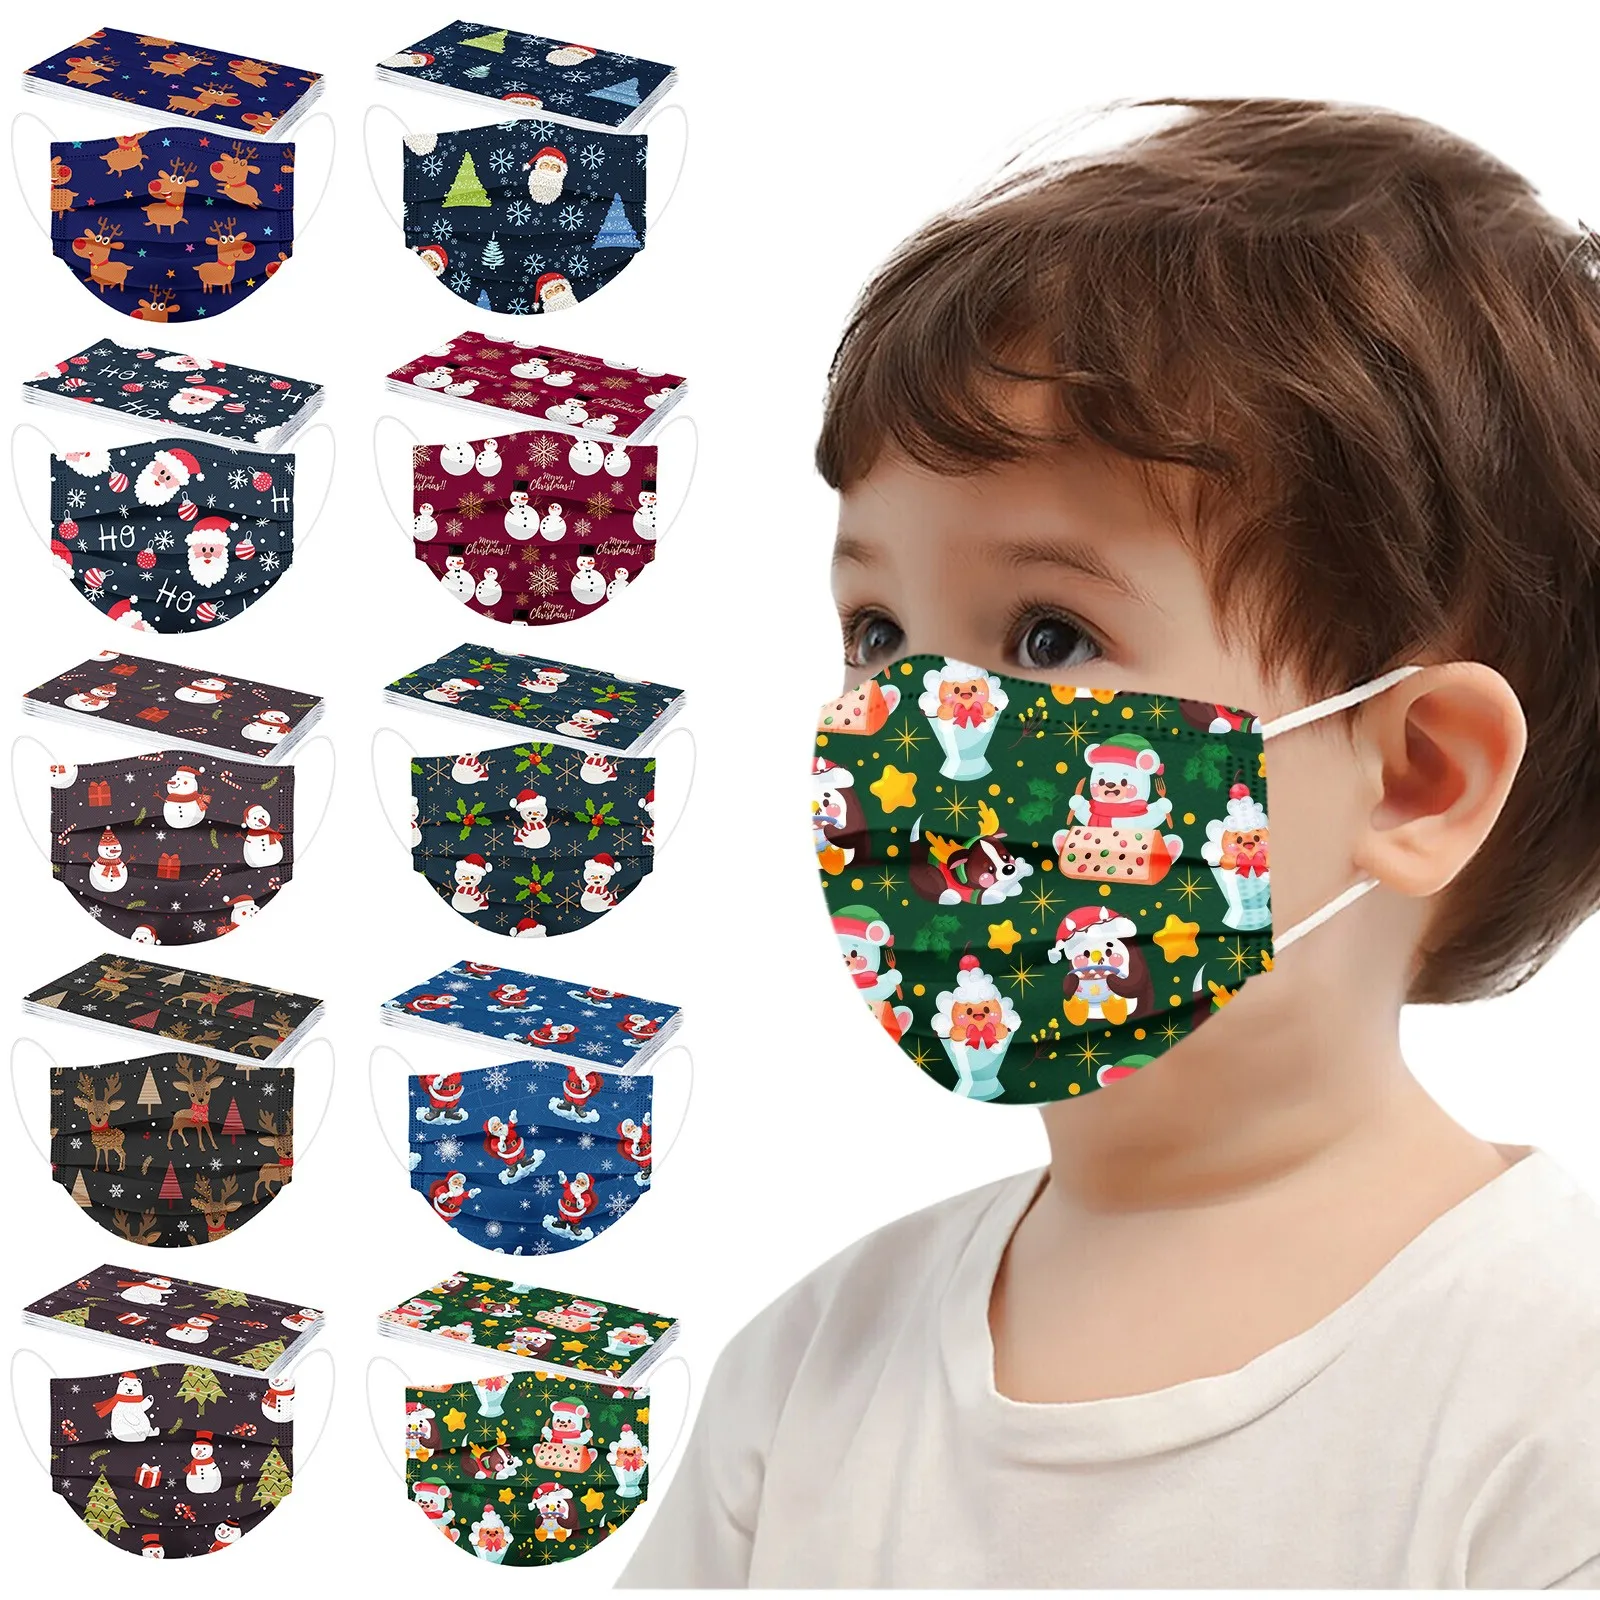 

10 шт., одноразовые защитные маски для детей, 3 слоя